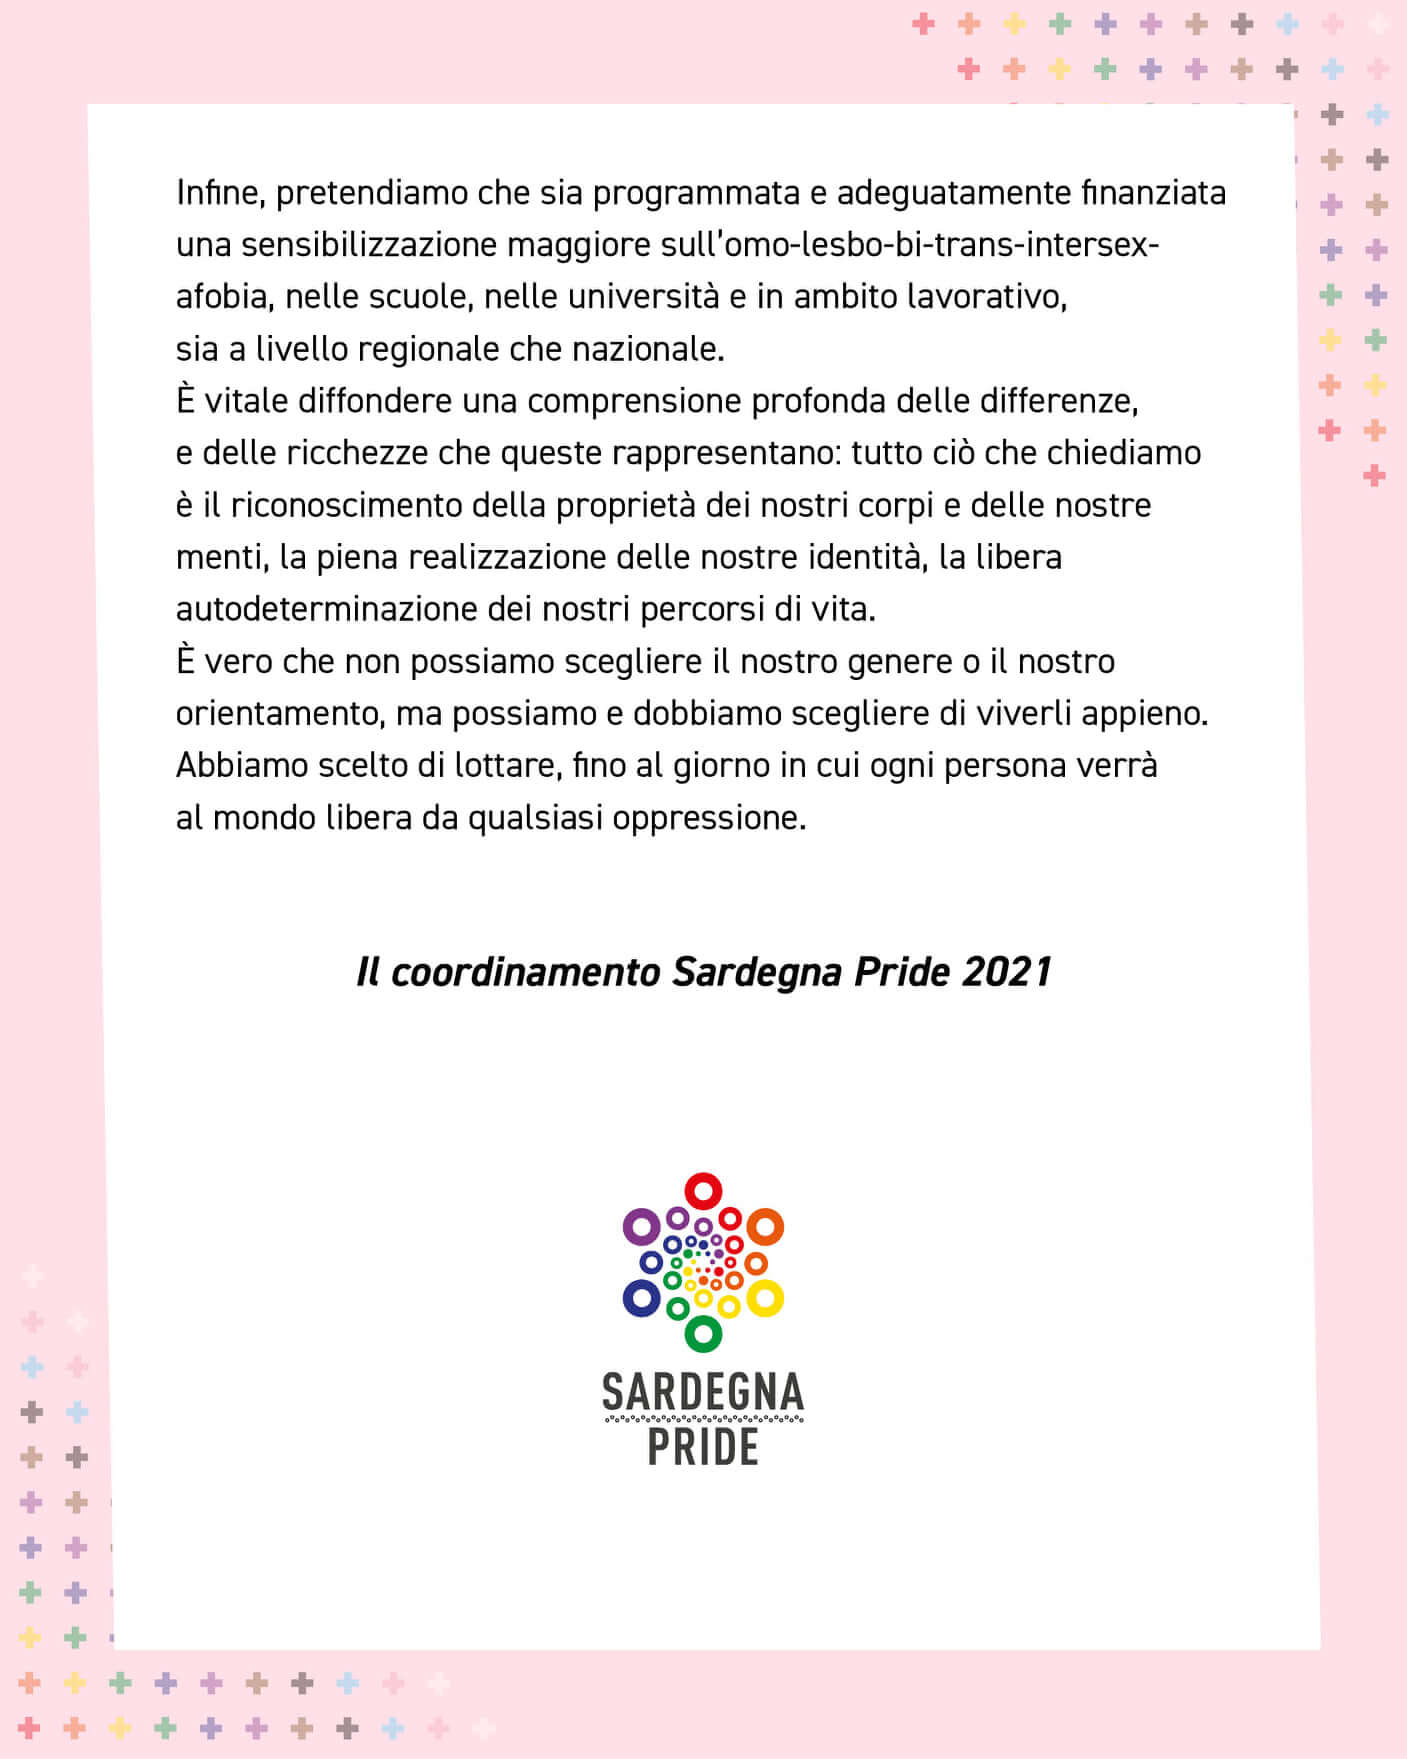 Sardegna Pride 2021, il 10 luglio tutti in piazza a Sassari e Cagliari - Sardegna Pride 9 - Gay.it